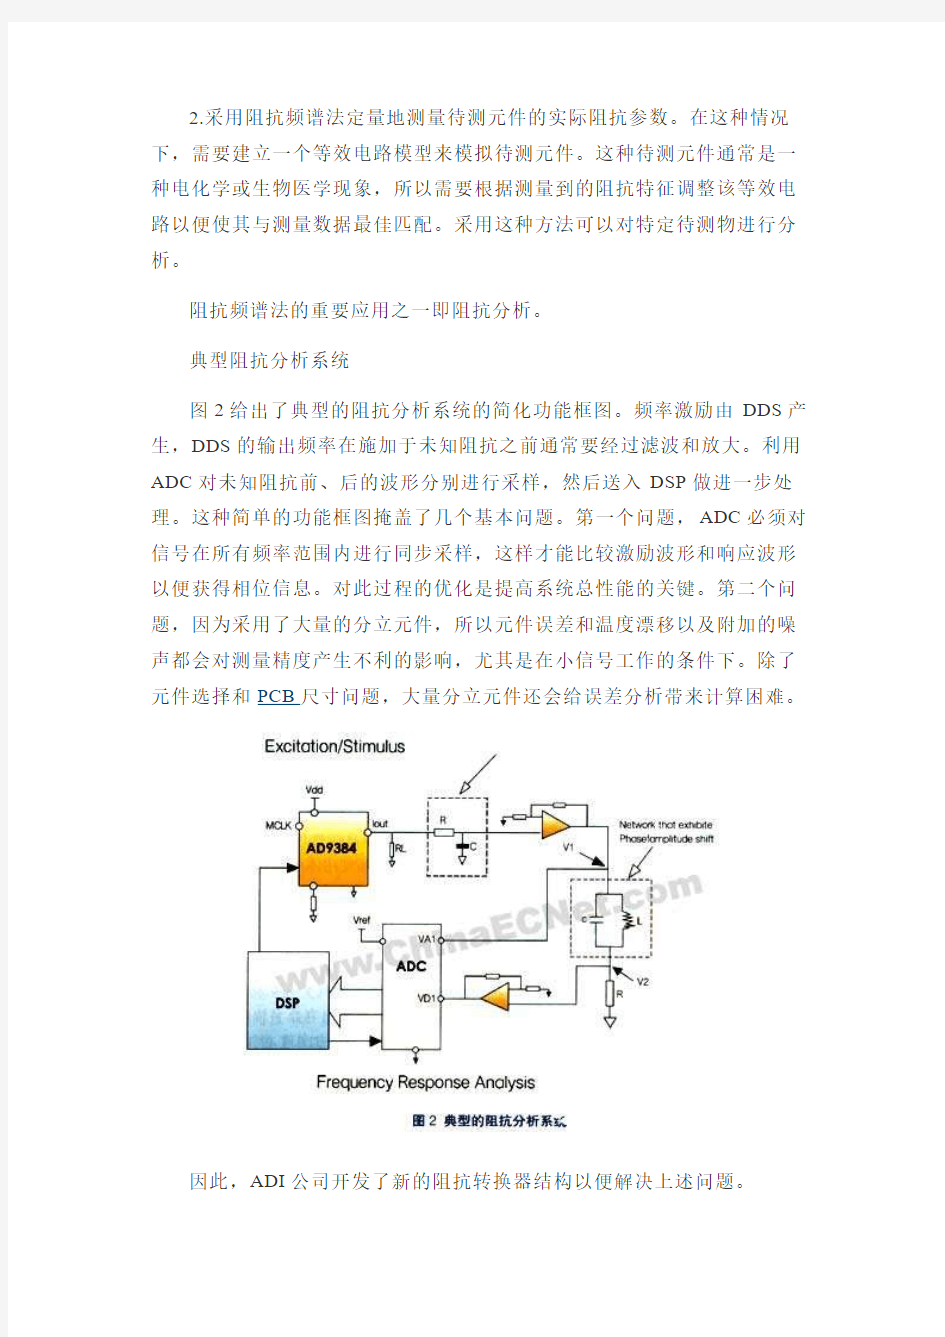 阻抗与电容测量转换器的工作原理、特点和应用